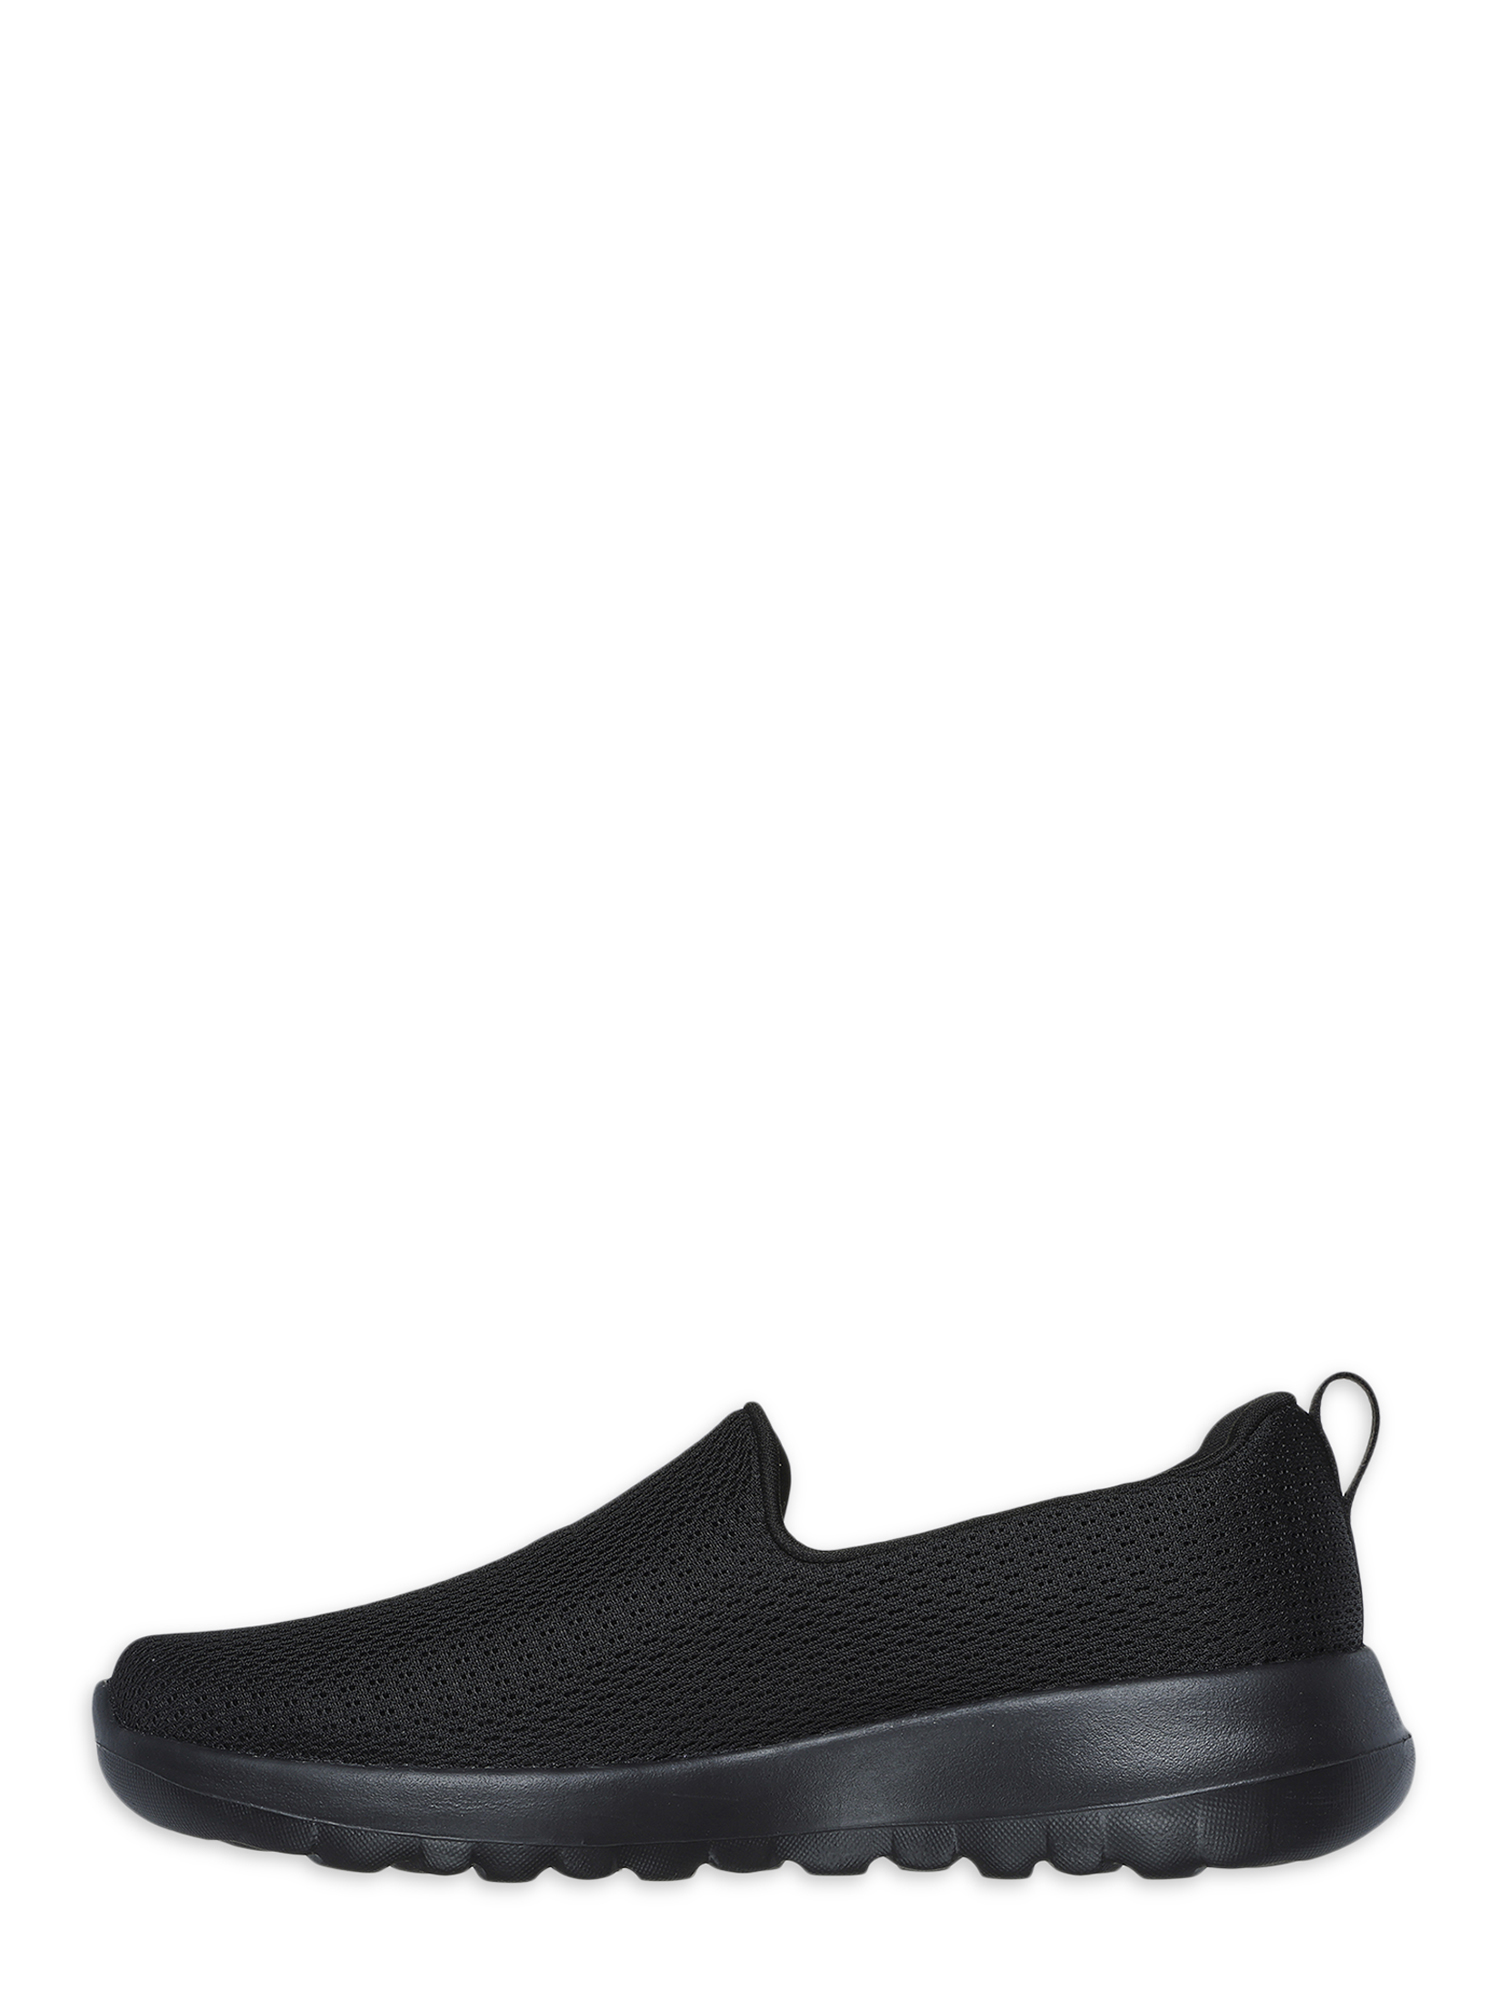 Skechers Women's Gowalk Joy Aurora Slip-on Sneaker, Wide Width Available - image 5 of 5